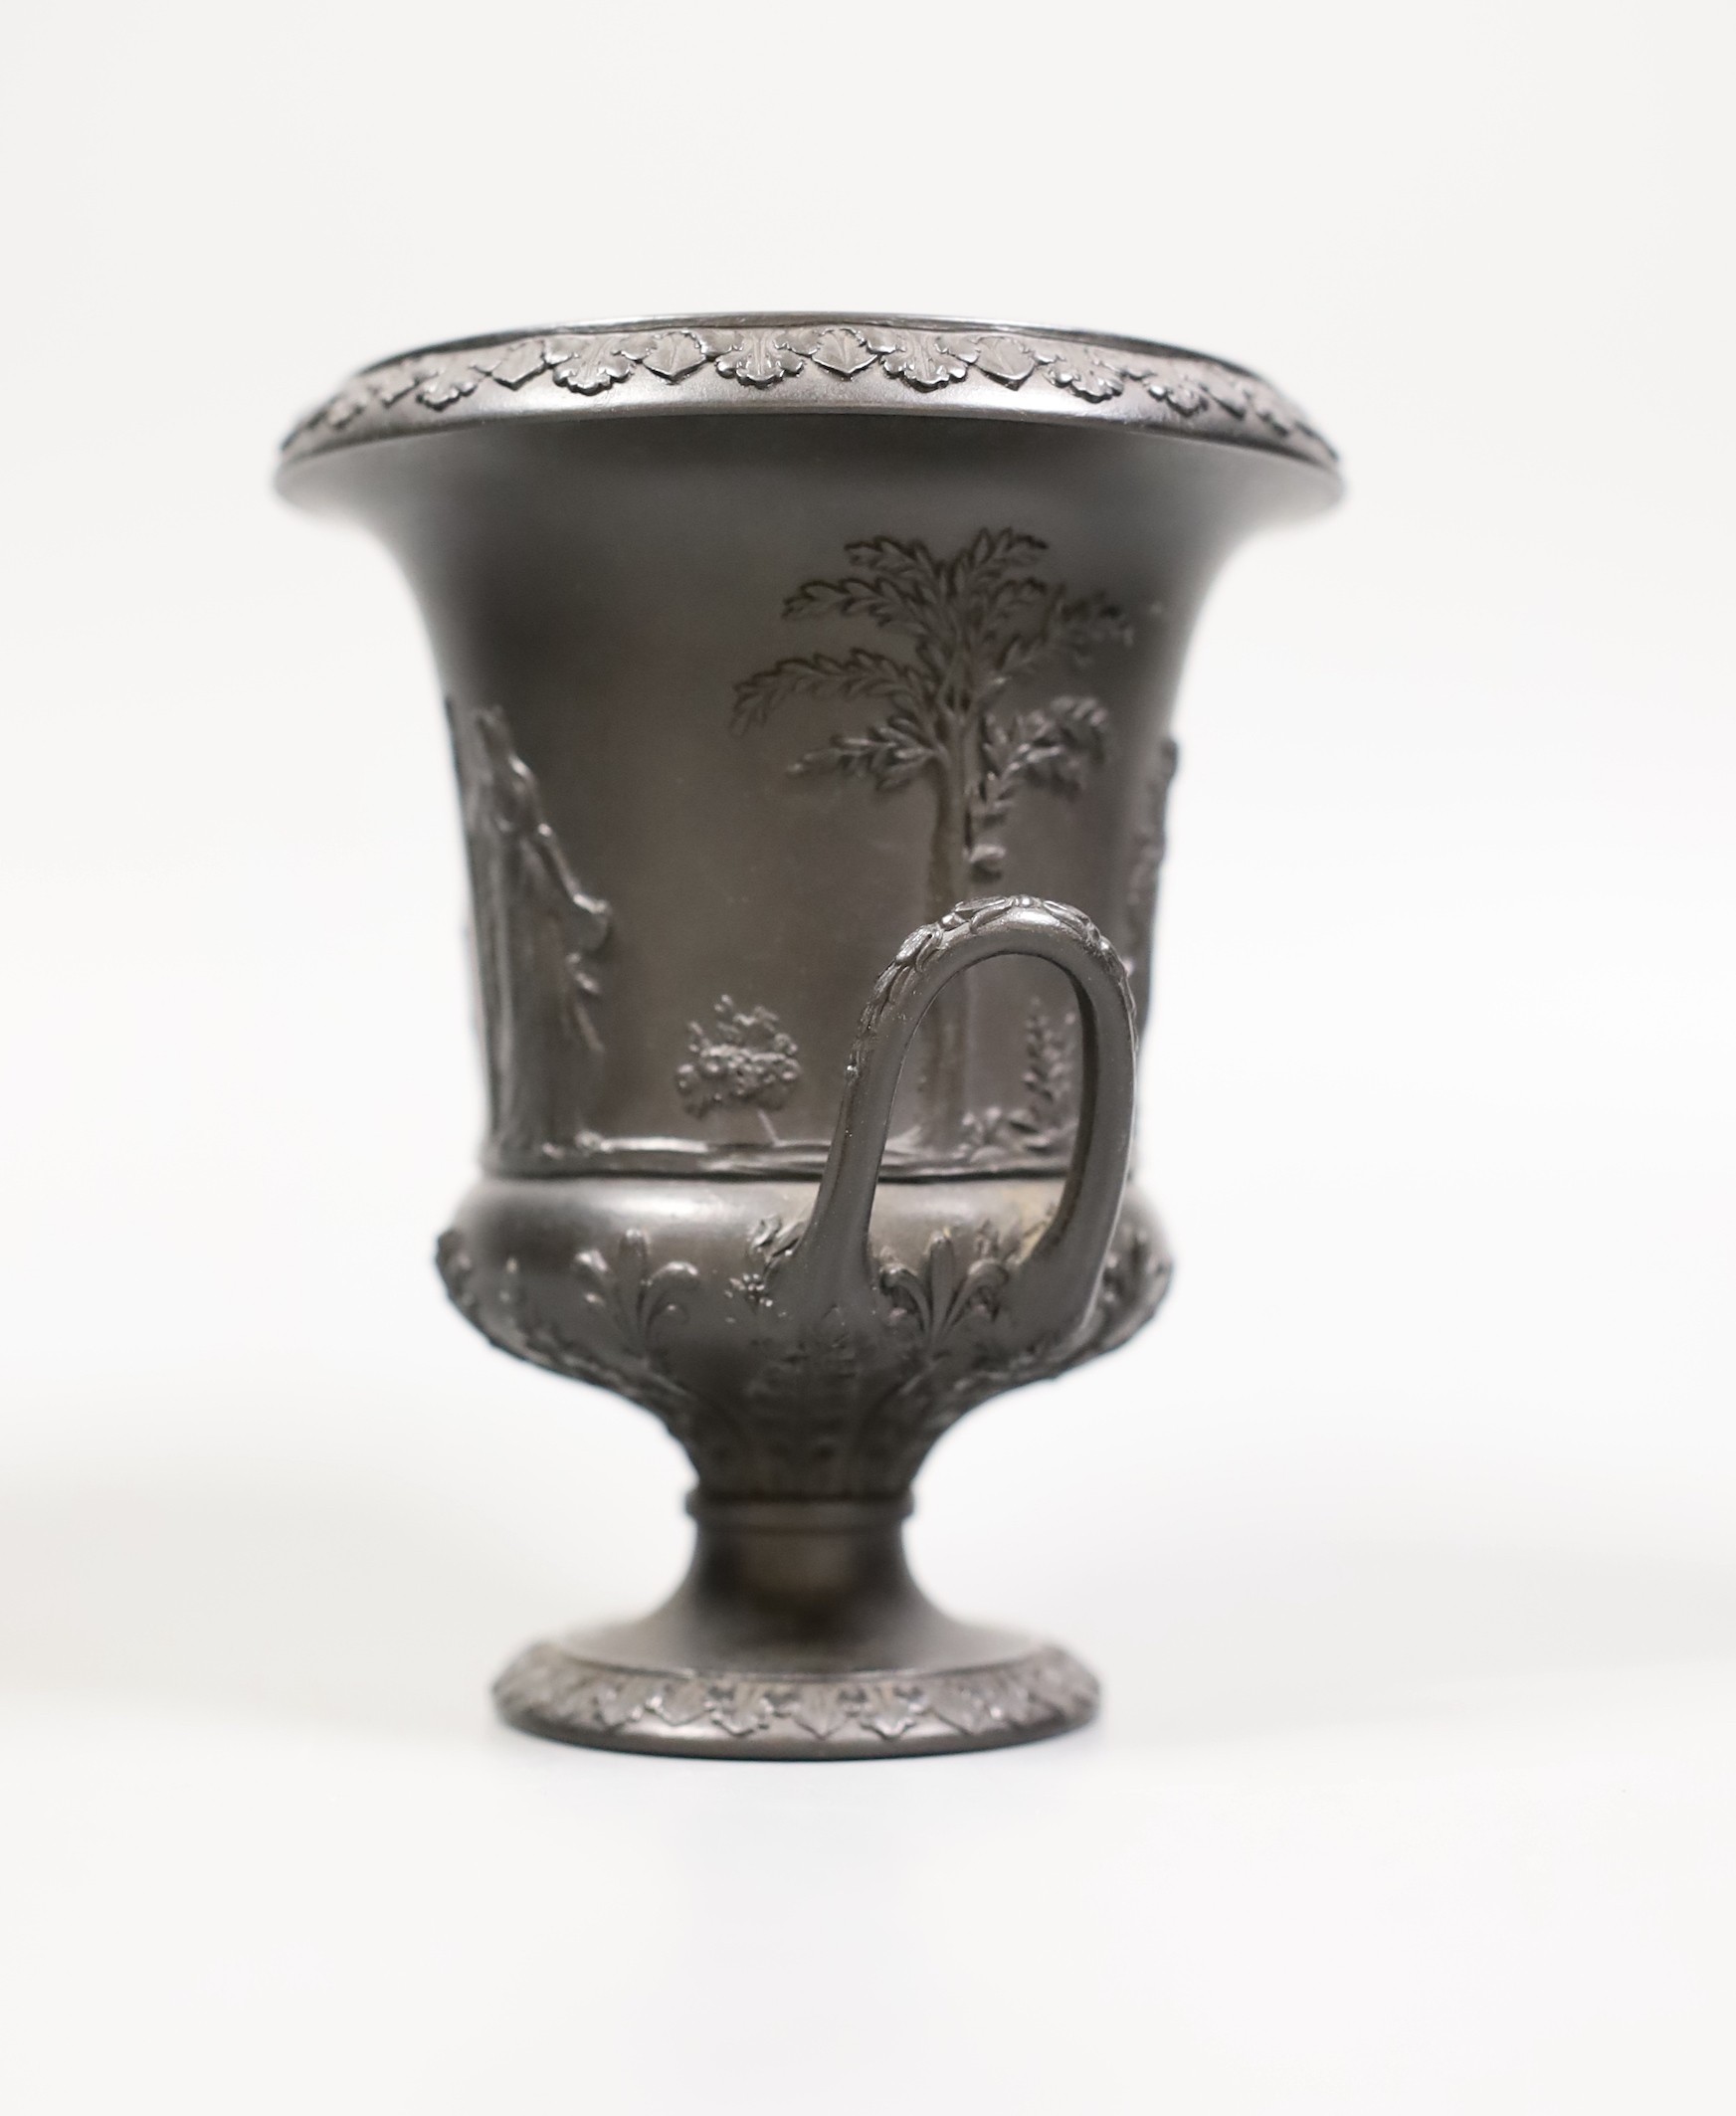 A Wedgwood black basalt urn vase, 13cm tall